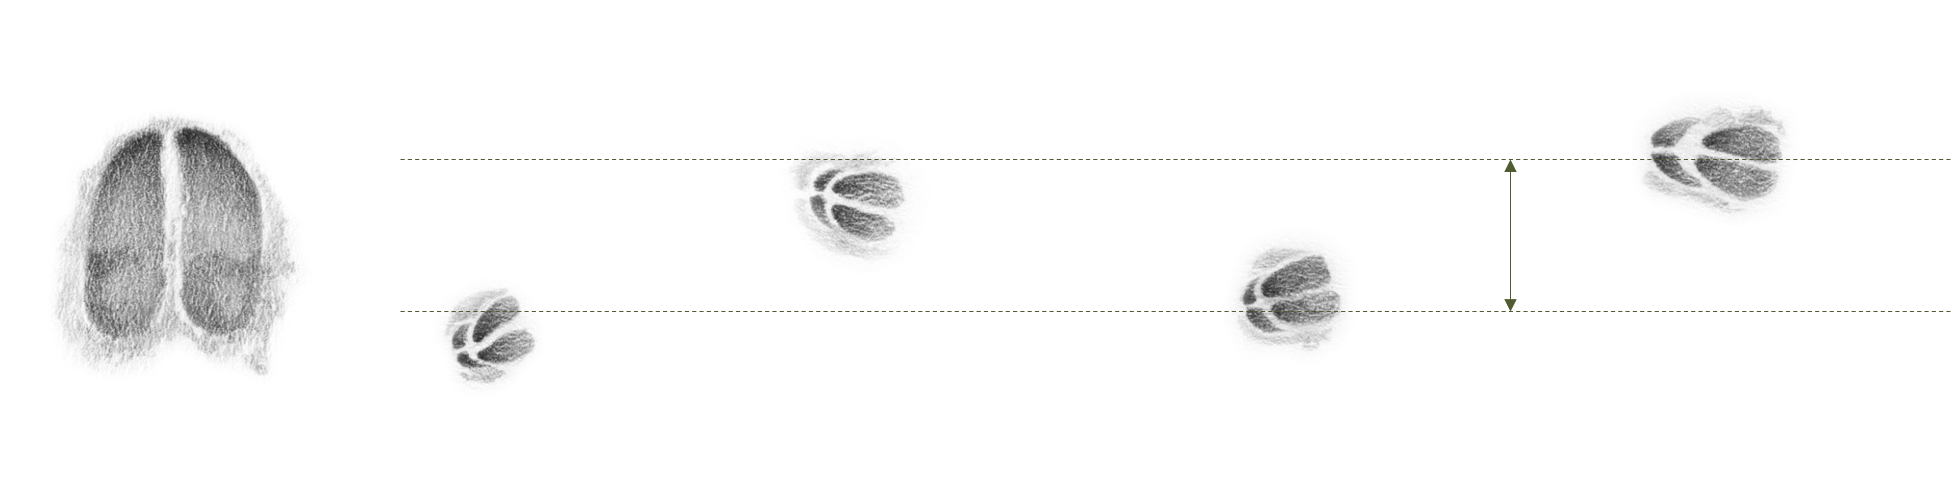 Abbildung: Der Abstand zwischen den linken und rechten Trittsiegeln wird als Schrank bezeichnet.